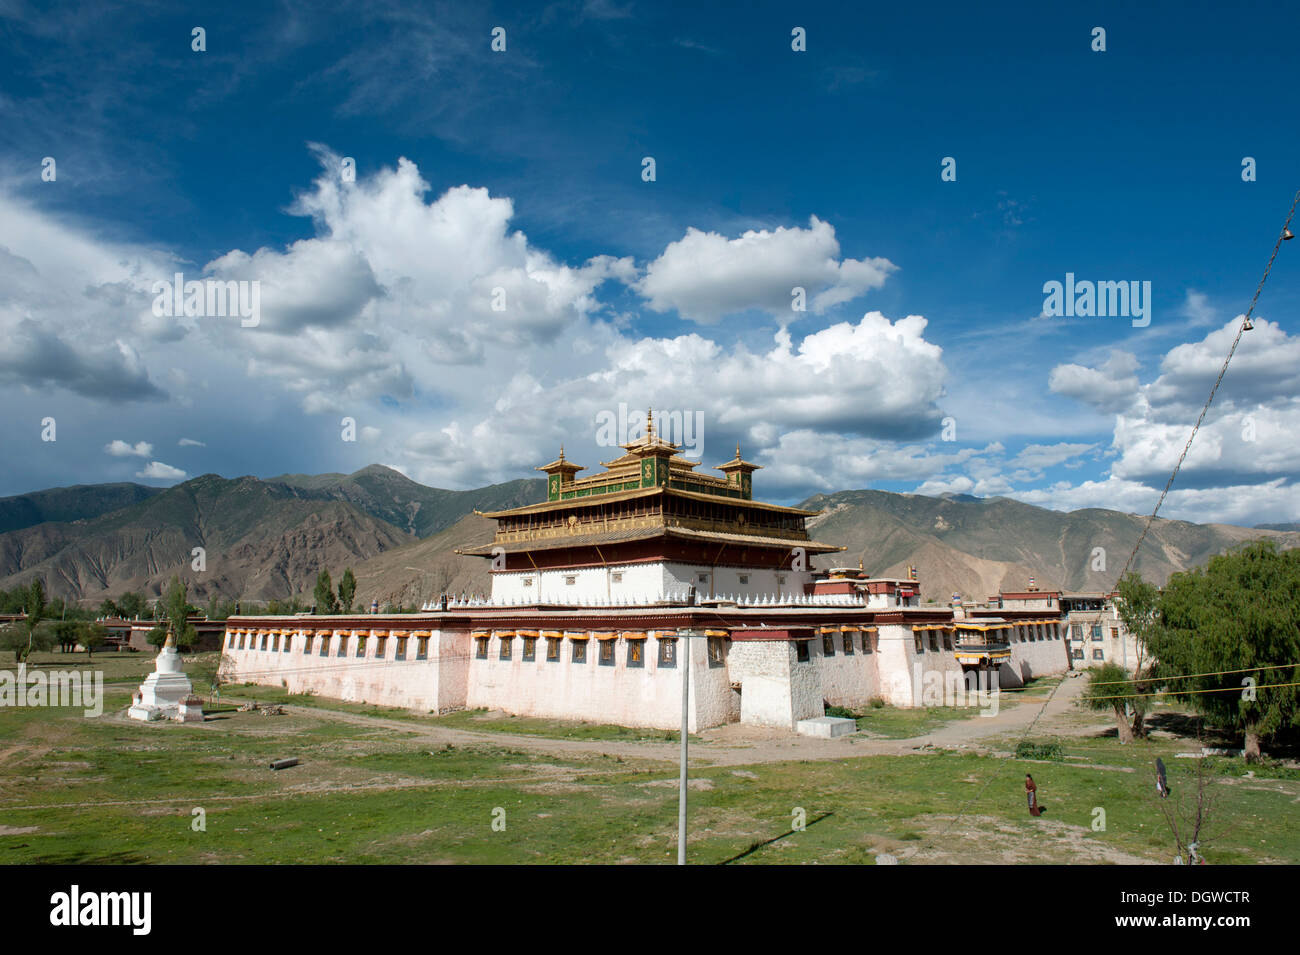 Le bouddhisme tibétain, temple central, Uetse, Samye, de l'Himalaya, le Tibet central, Ue-Tsang, dans la région autonome du Tibet Banque D'Images